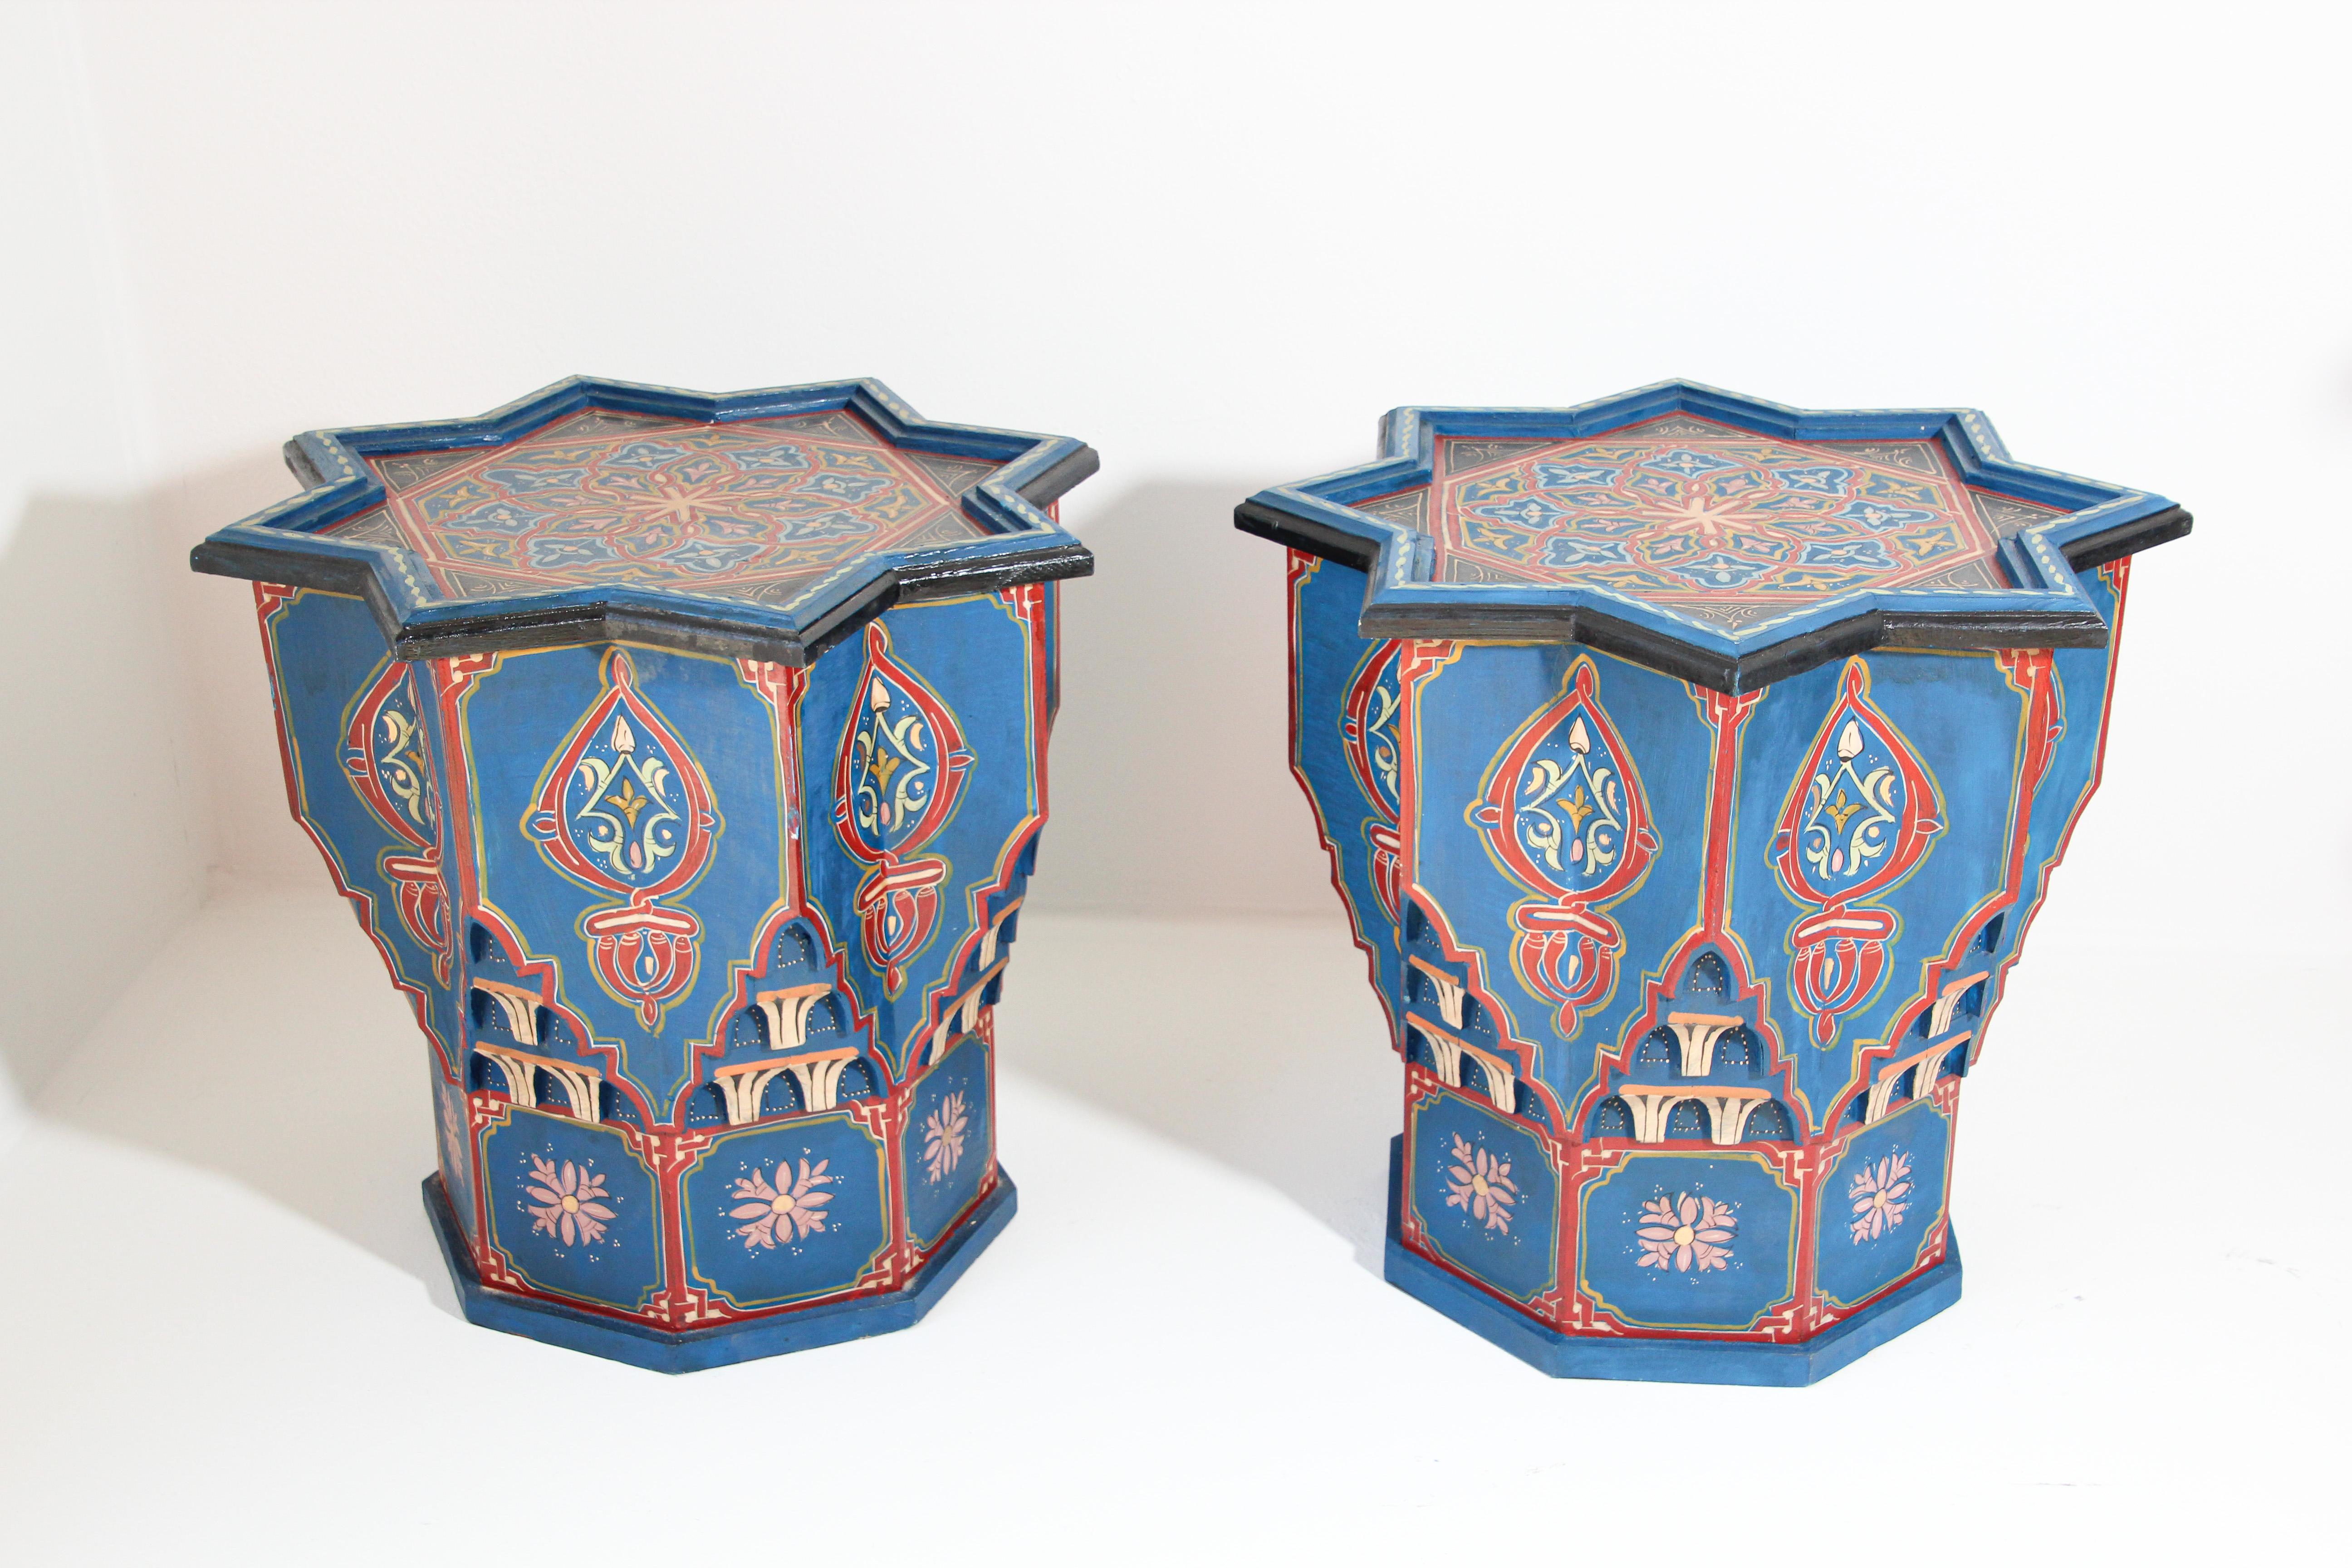 Paire de tables d'appoint marocaines peintes à la main en bleu et sculptées de motifs islamiques mauresques.
Tables d'appoint marocaines vintage sur fond bleu royal avec des motifs floraux et géométriques multicolores.
Œuvre d'art très décorative